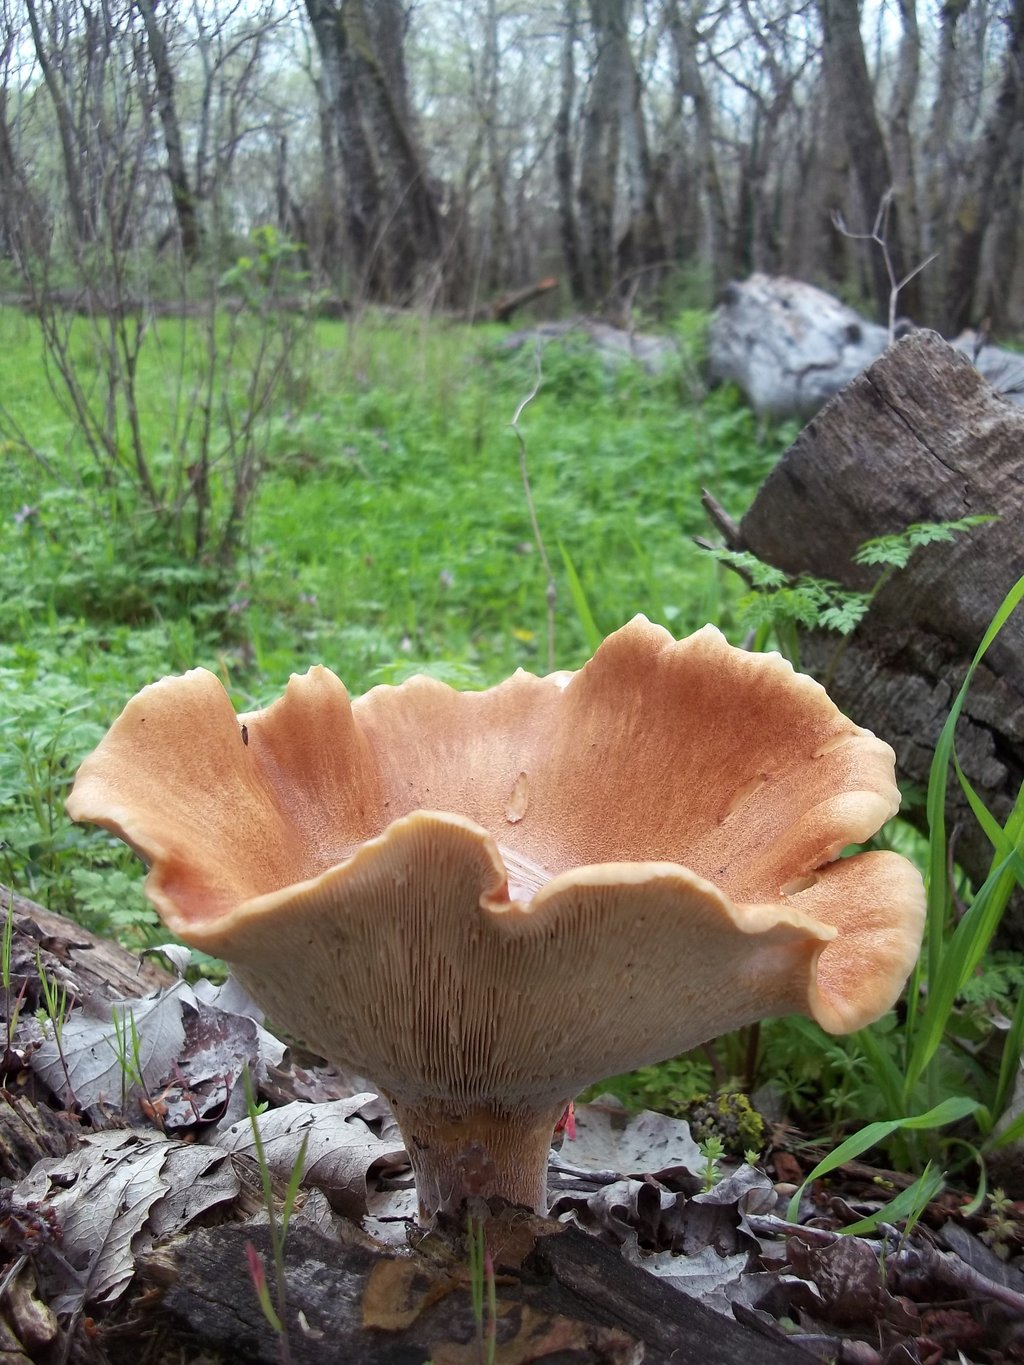 Пилолистник бокаловидный – гриб с приятным грибным ароматом — викигриб